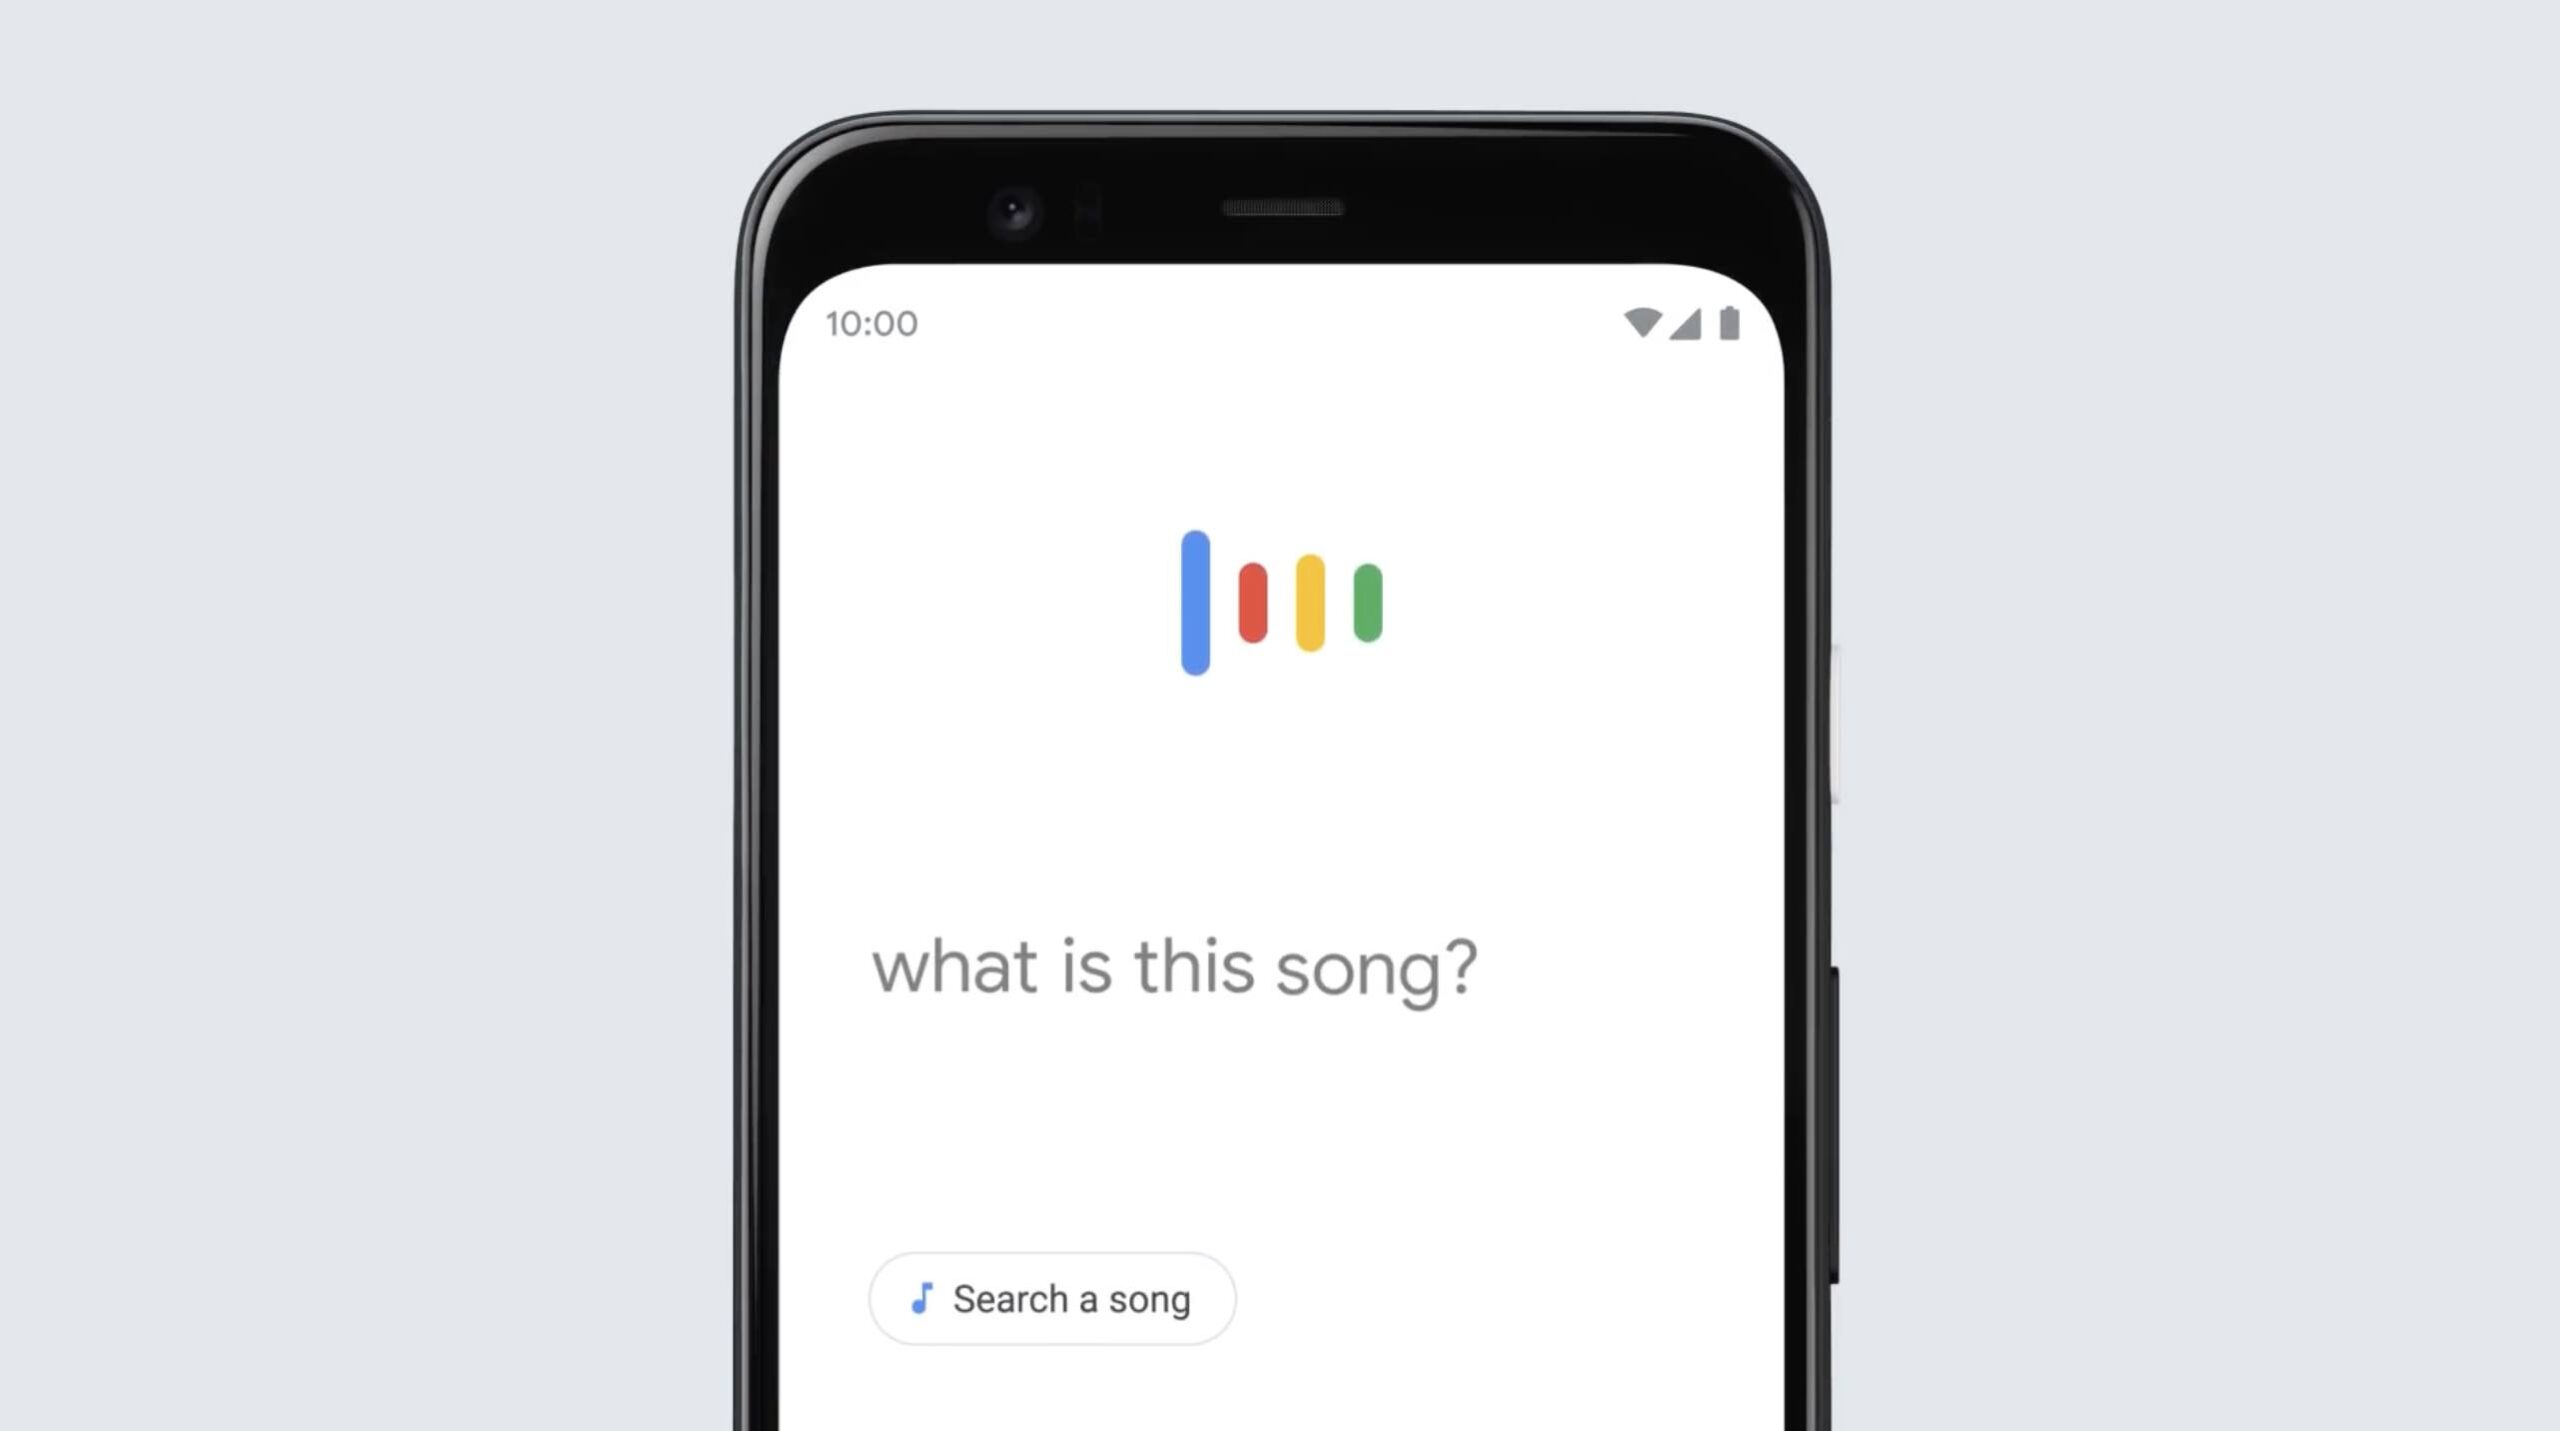  Hum to Search, canta e Google scopre la canzone